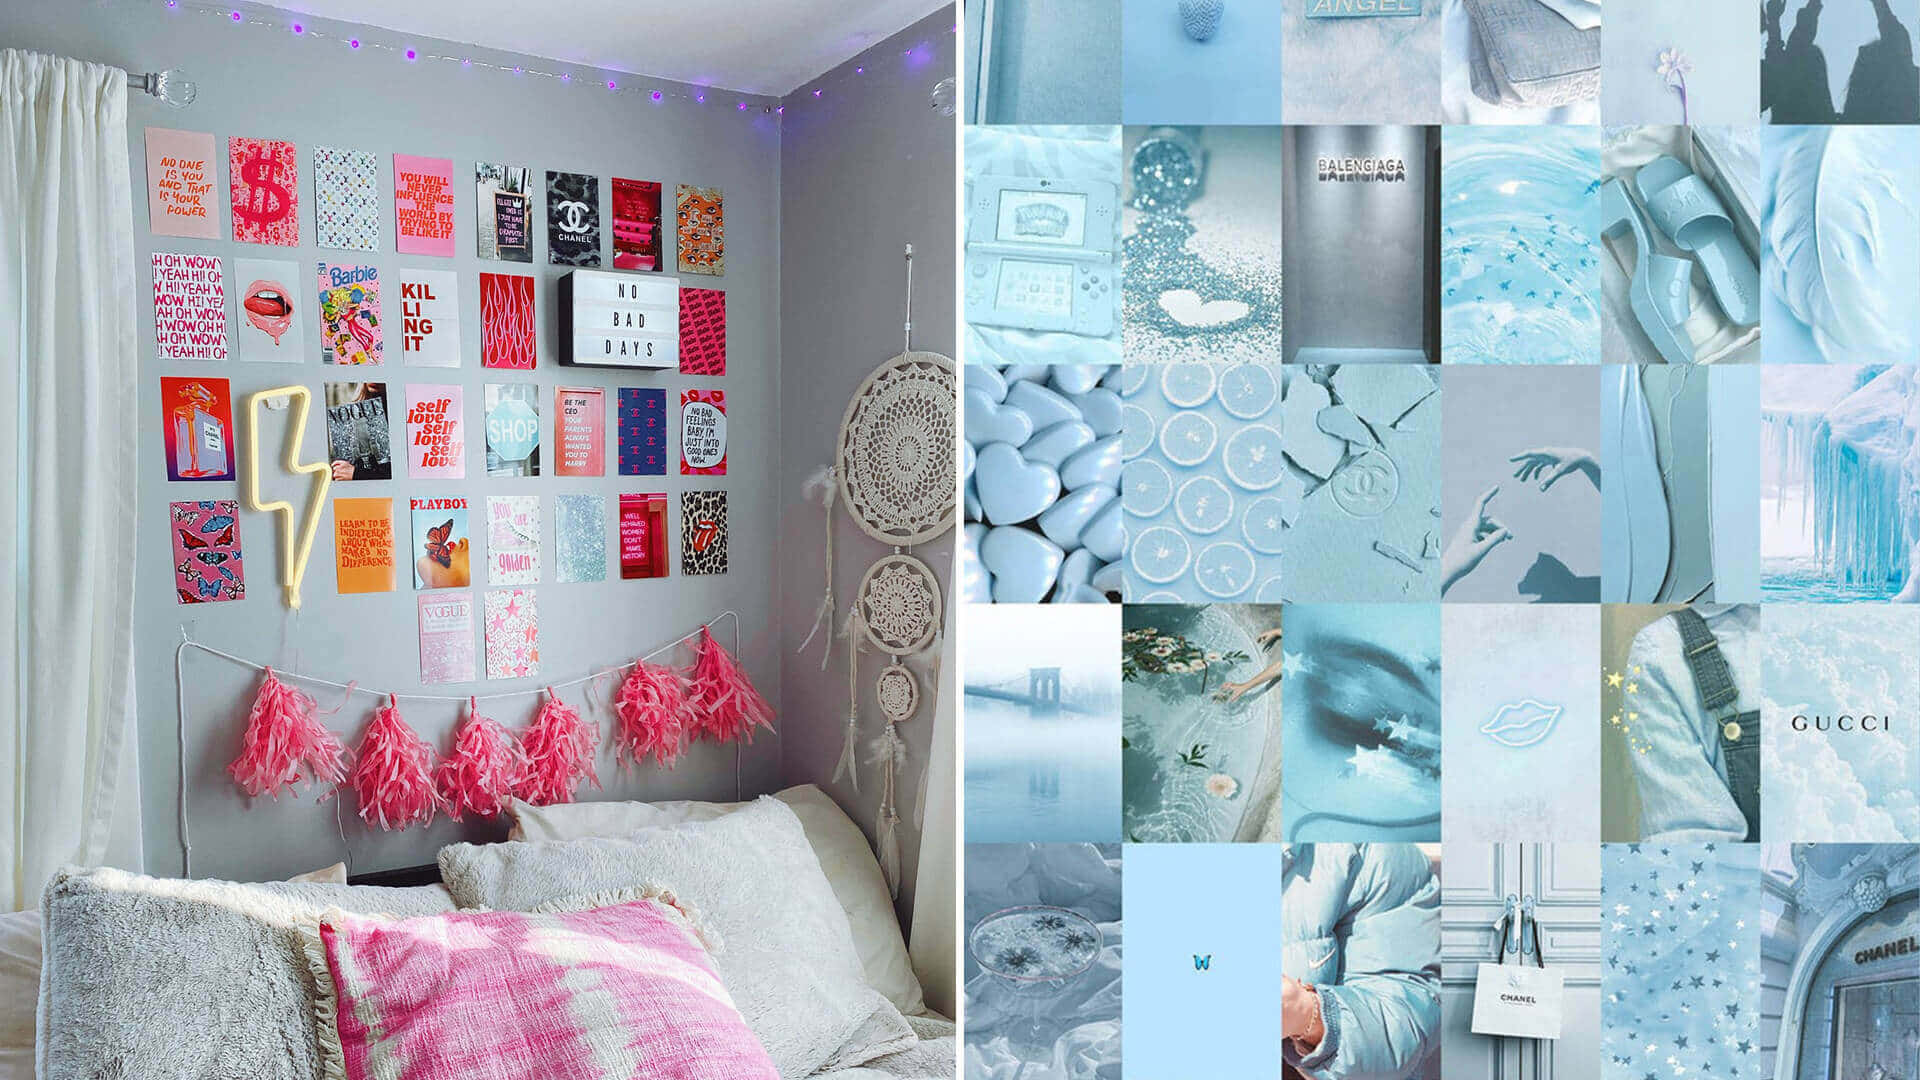 Uncollage De Imágenes De Un Dormitorio Con Una Decoración En Tonos Azules Y Blancos